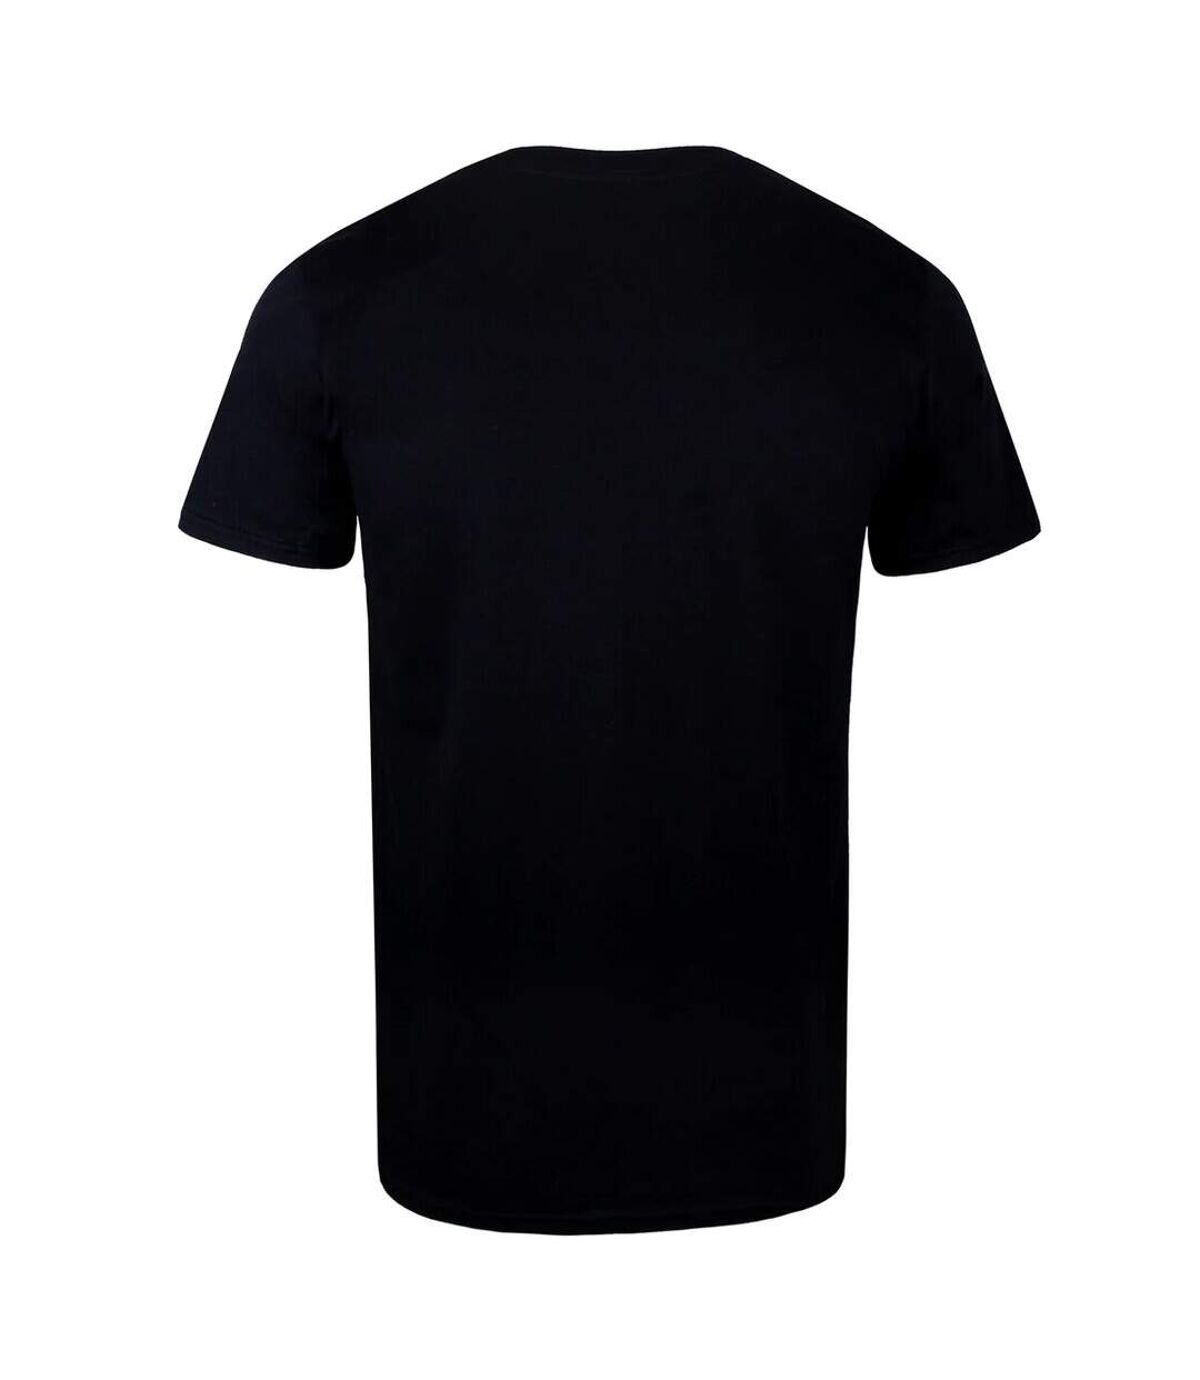 Marvel - T-shirt - Homme (Noir) - UTTV839